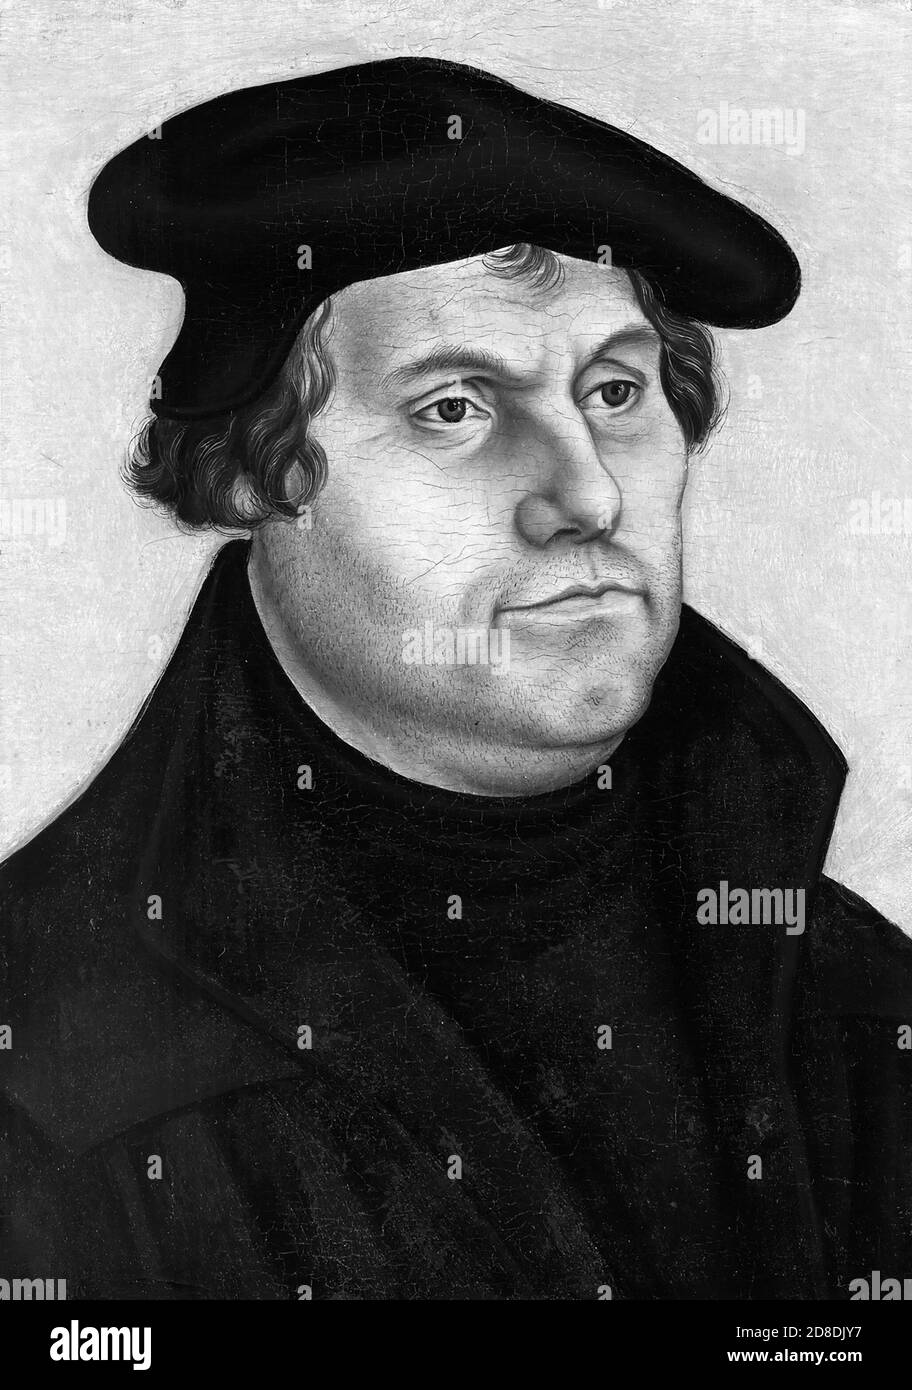 Martin Luther (1483-1546) était un professeur allemand, théologien, et figure clé dans la réforme protestante, ainsi qu'un traducteur de la Bible dans le vernaculaire allemand. Banque D'Images